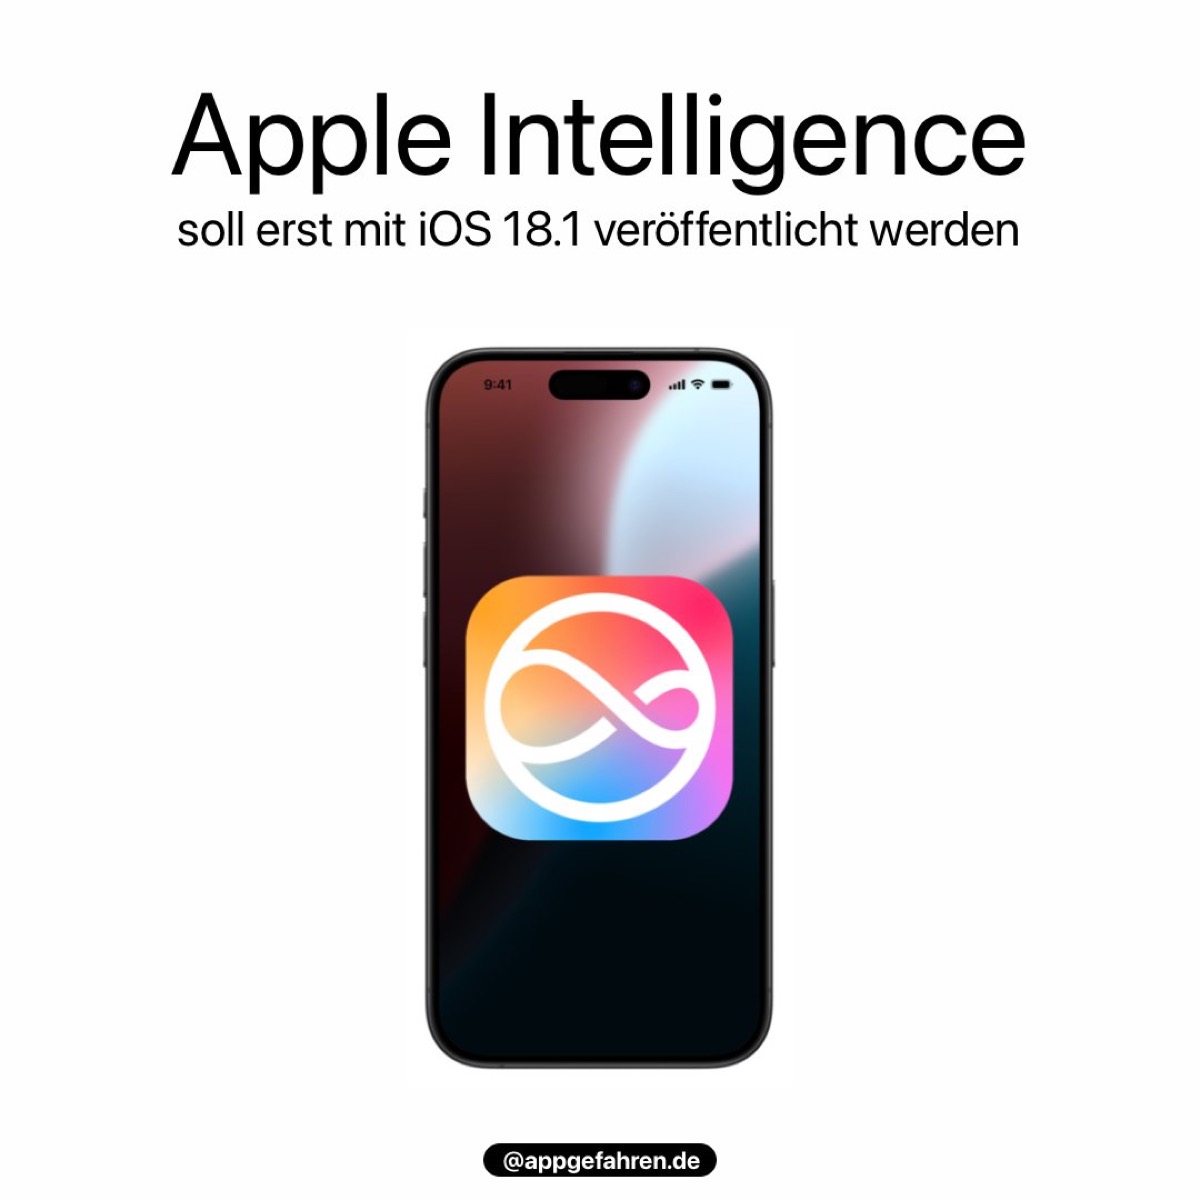 iOS181 Apple Intelligence Af_1200